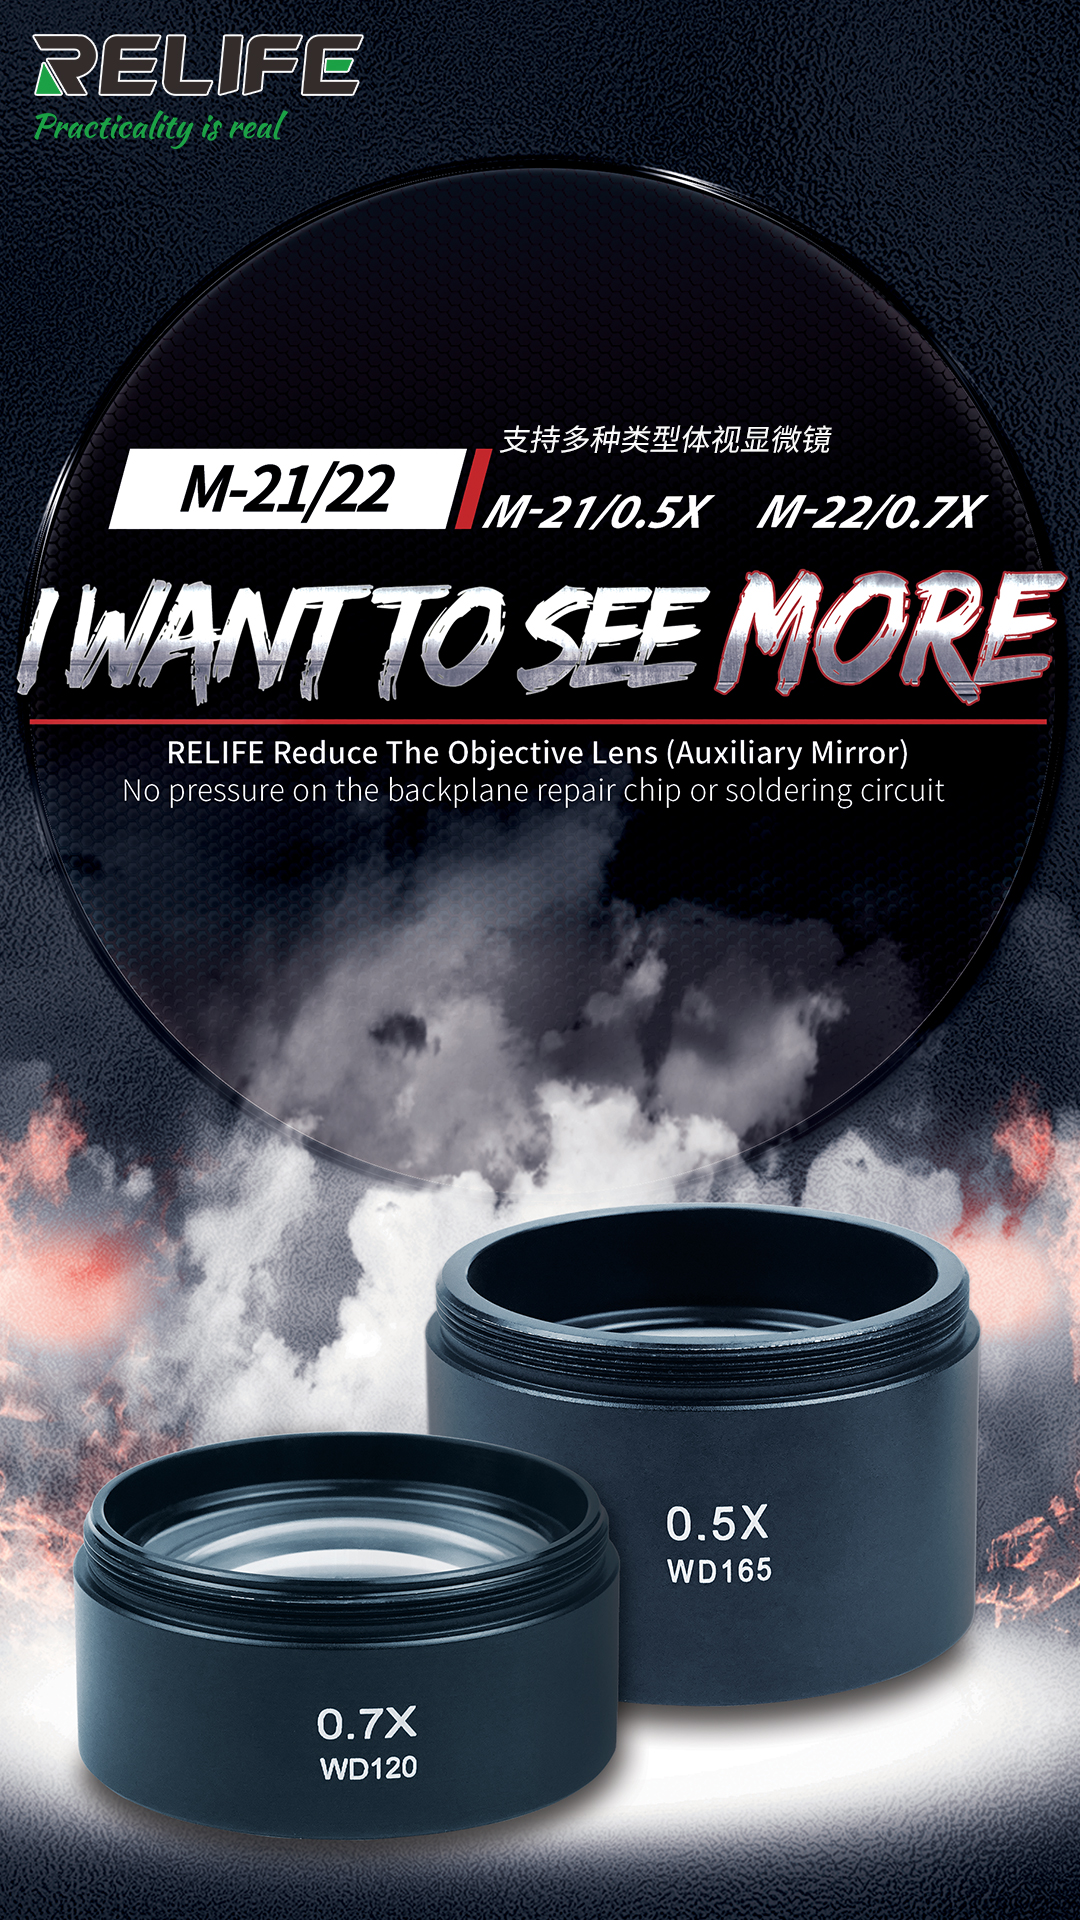 RELIFE M-22 0.7x Auxiliary Lens relife M-22 0.7x Auxiliary Lens